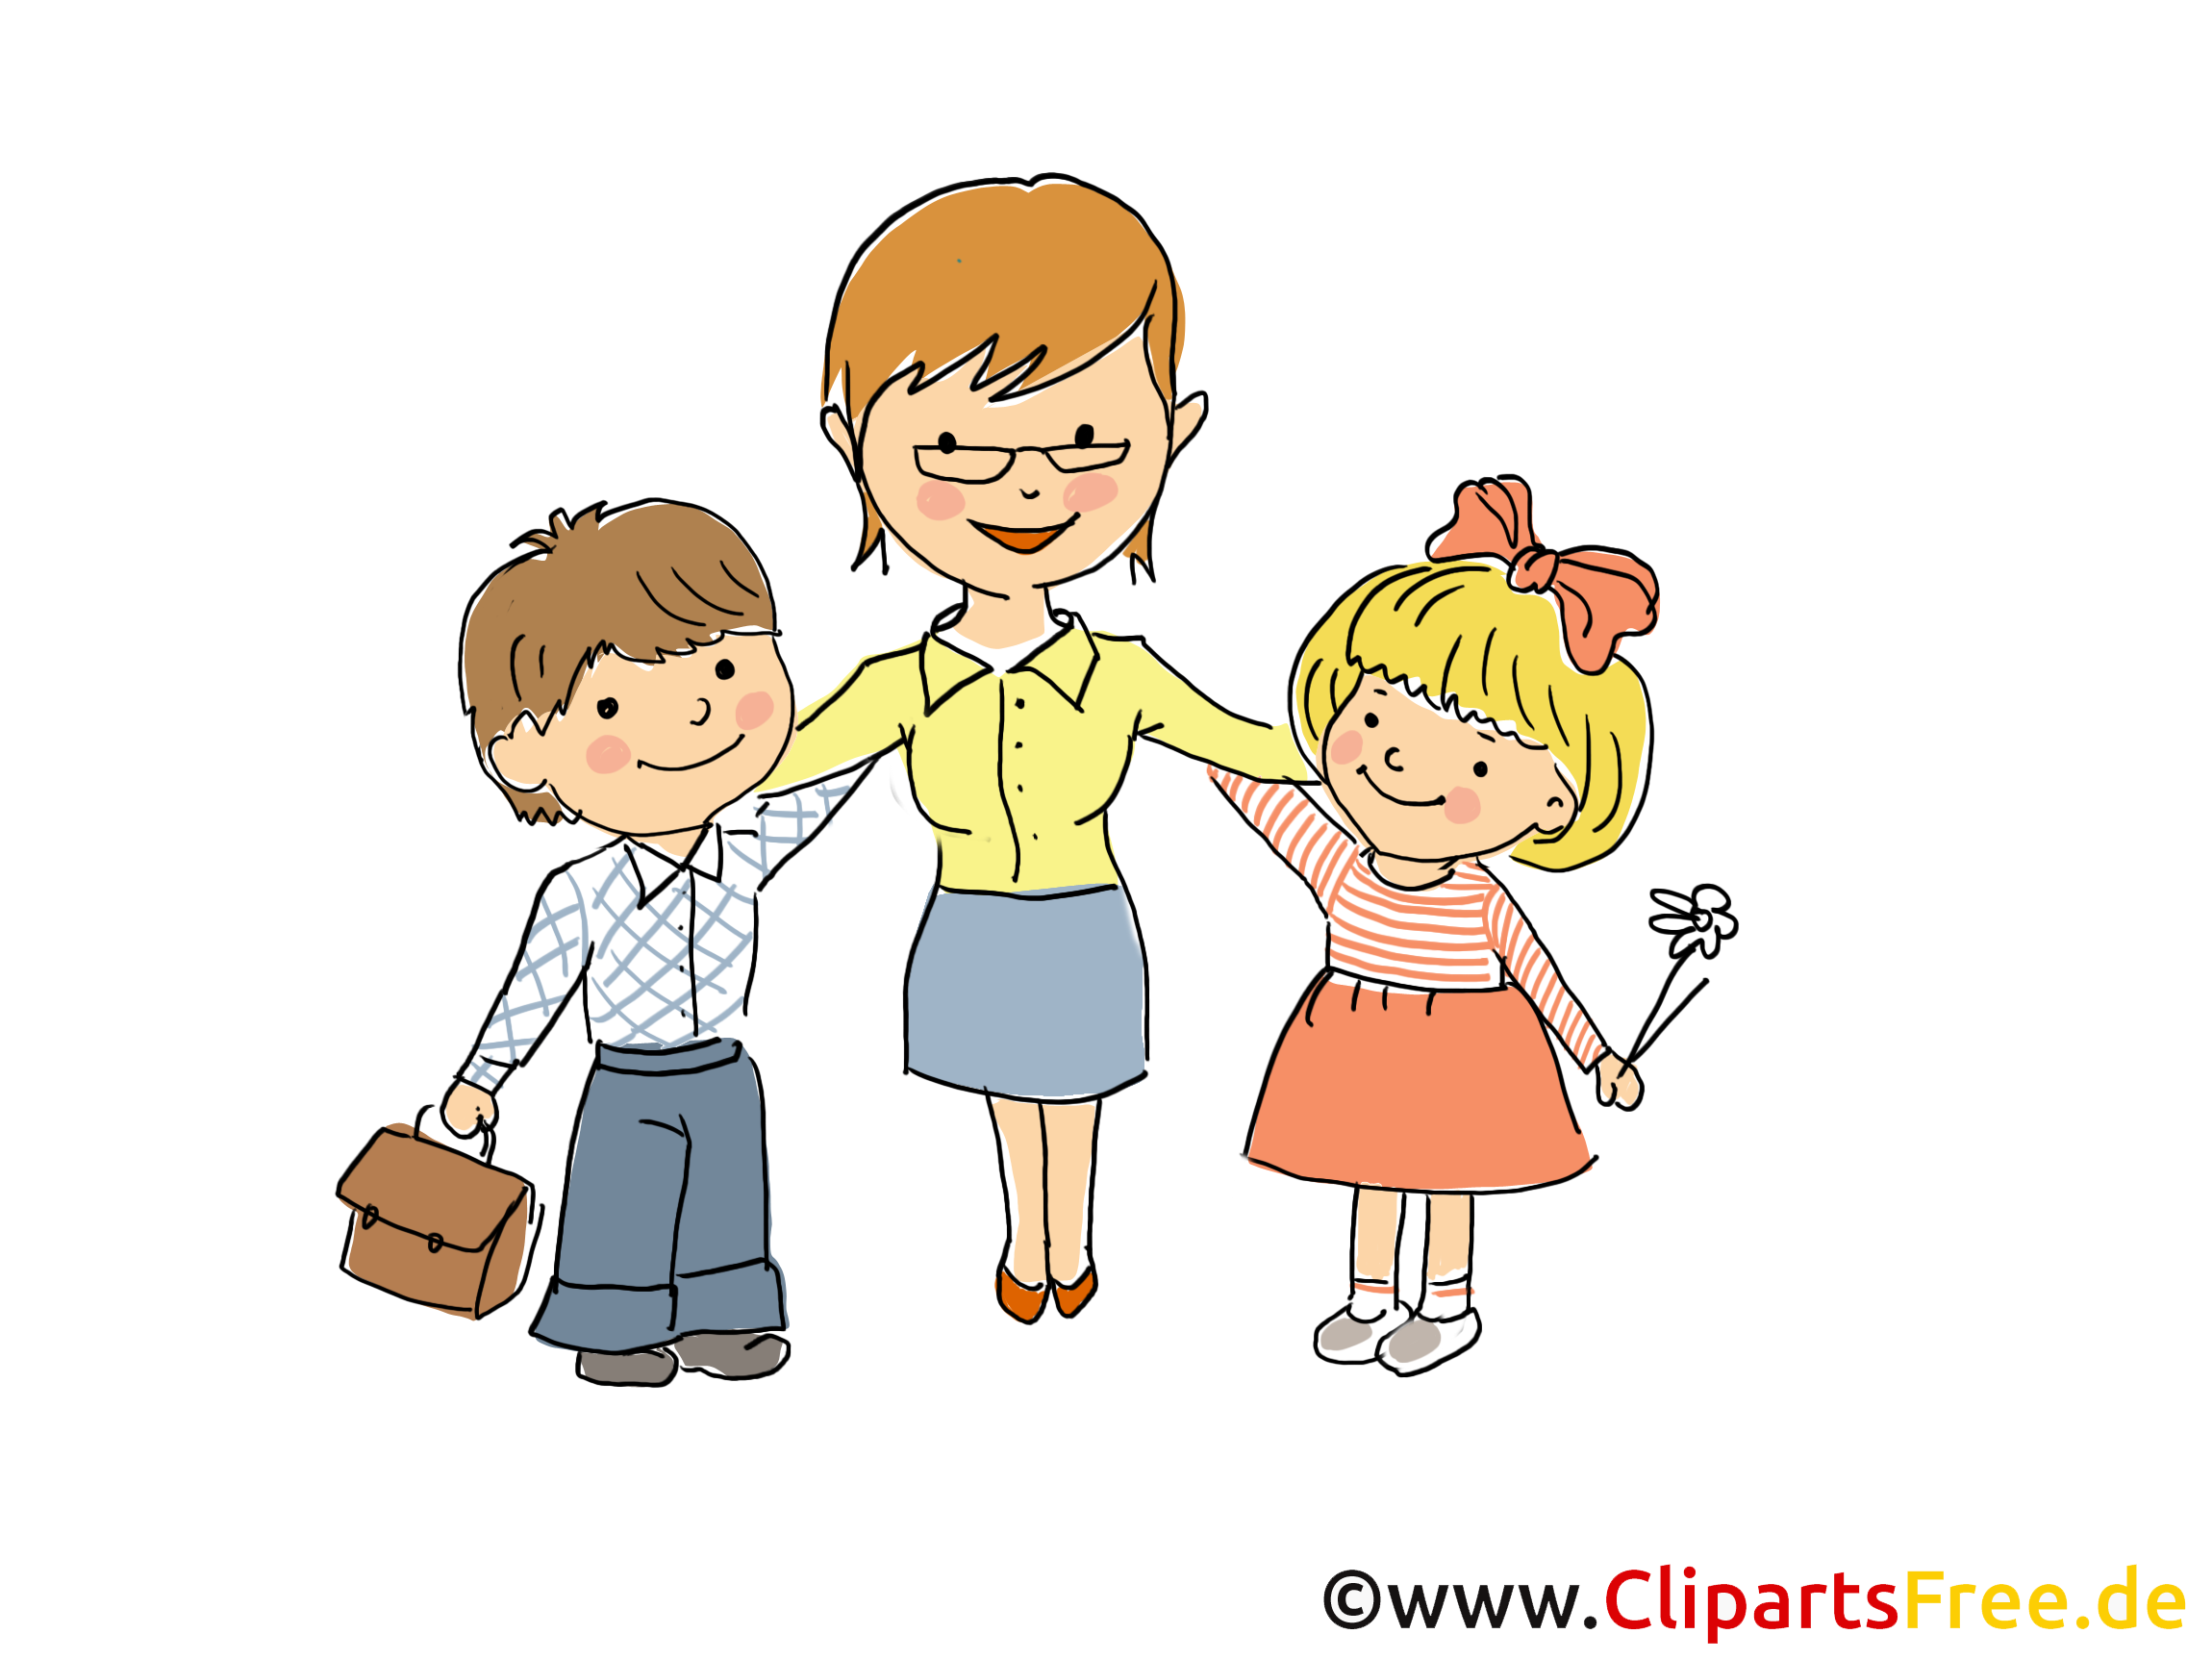 clipart kostenlos kindergarten - photo #14